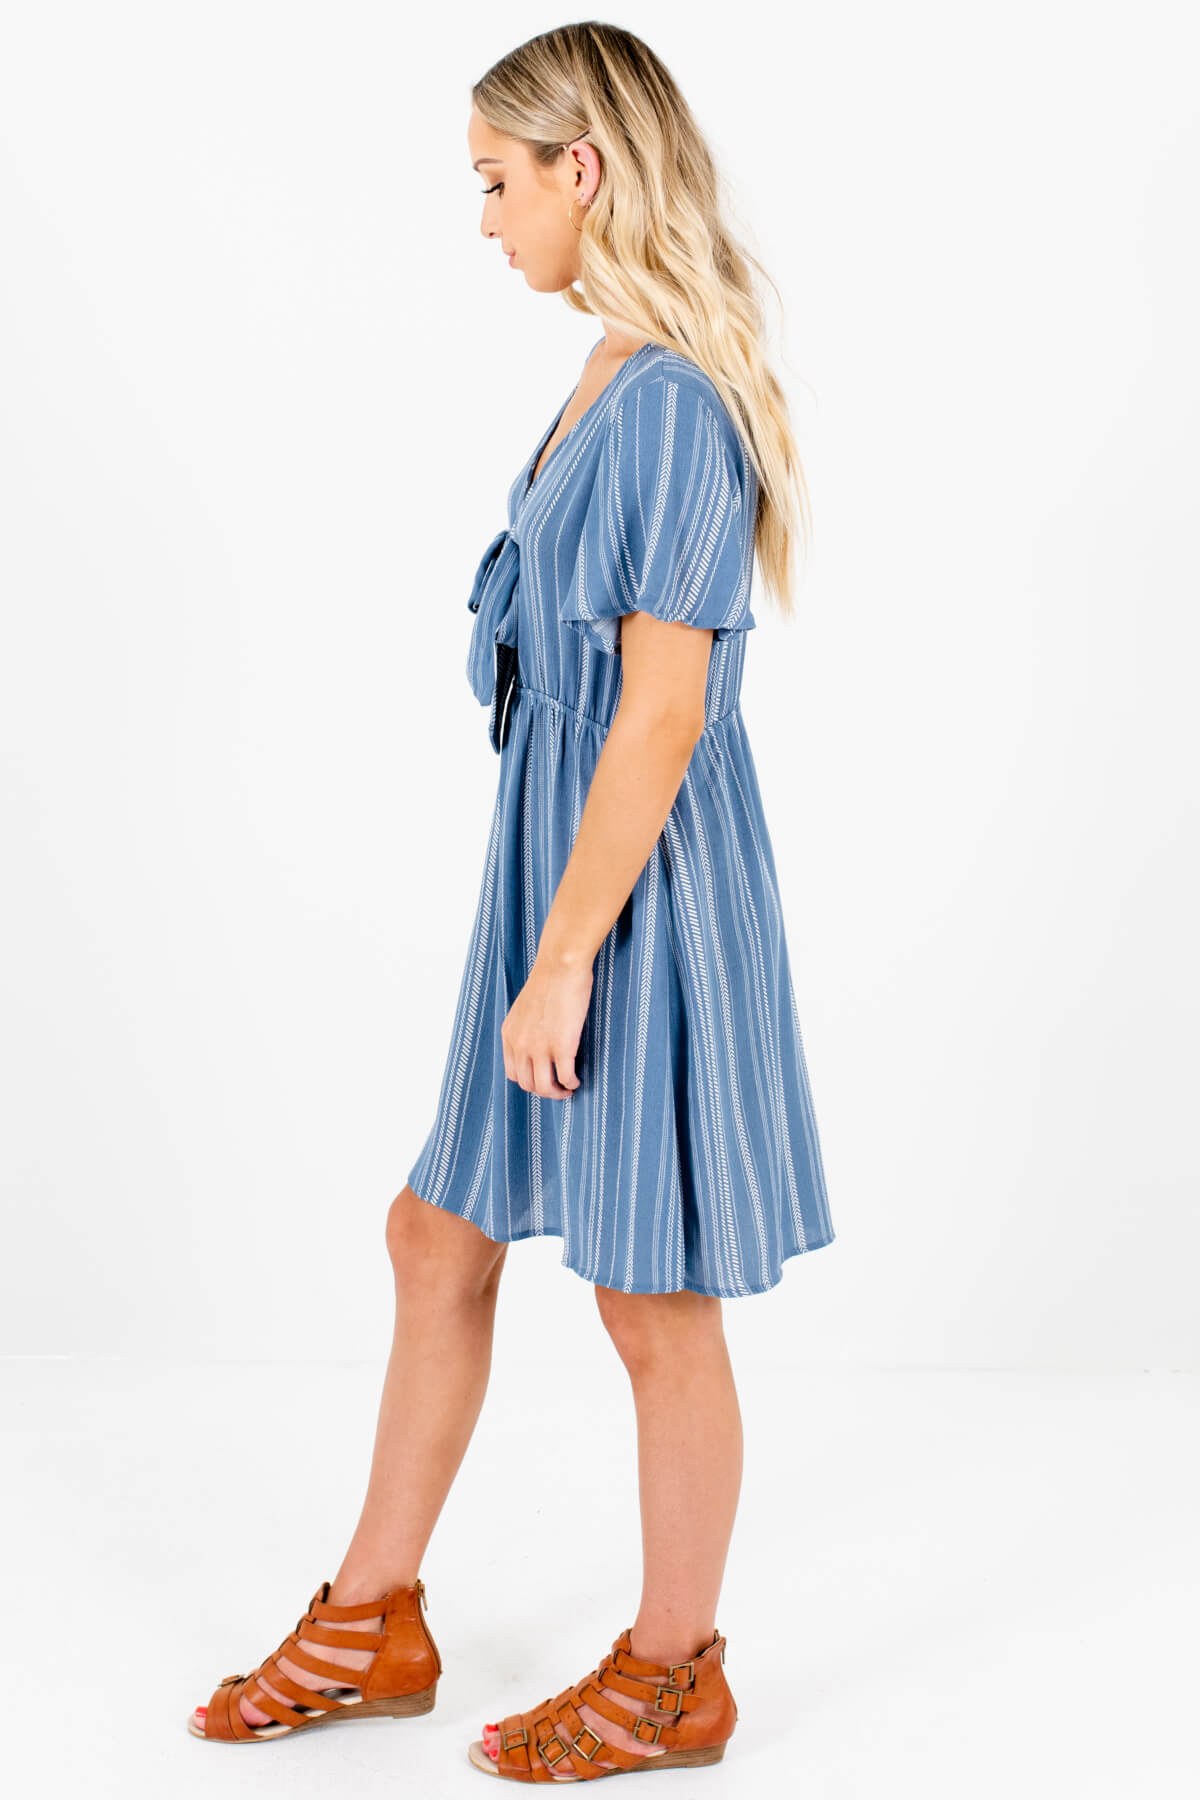 Blue White Stripe Tie Front Mini Dresses Affordable Online Boutique